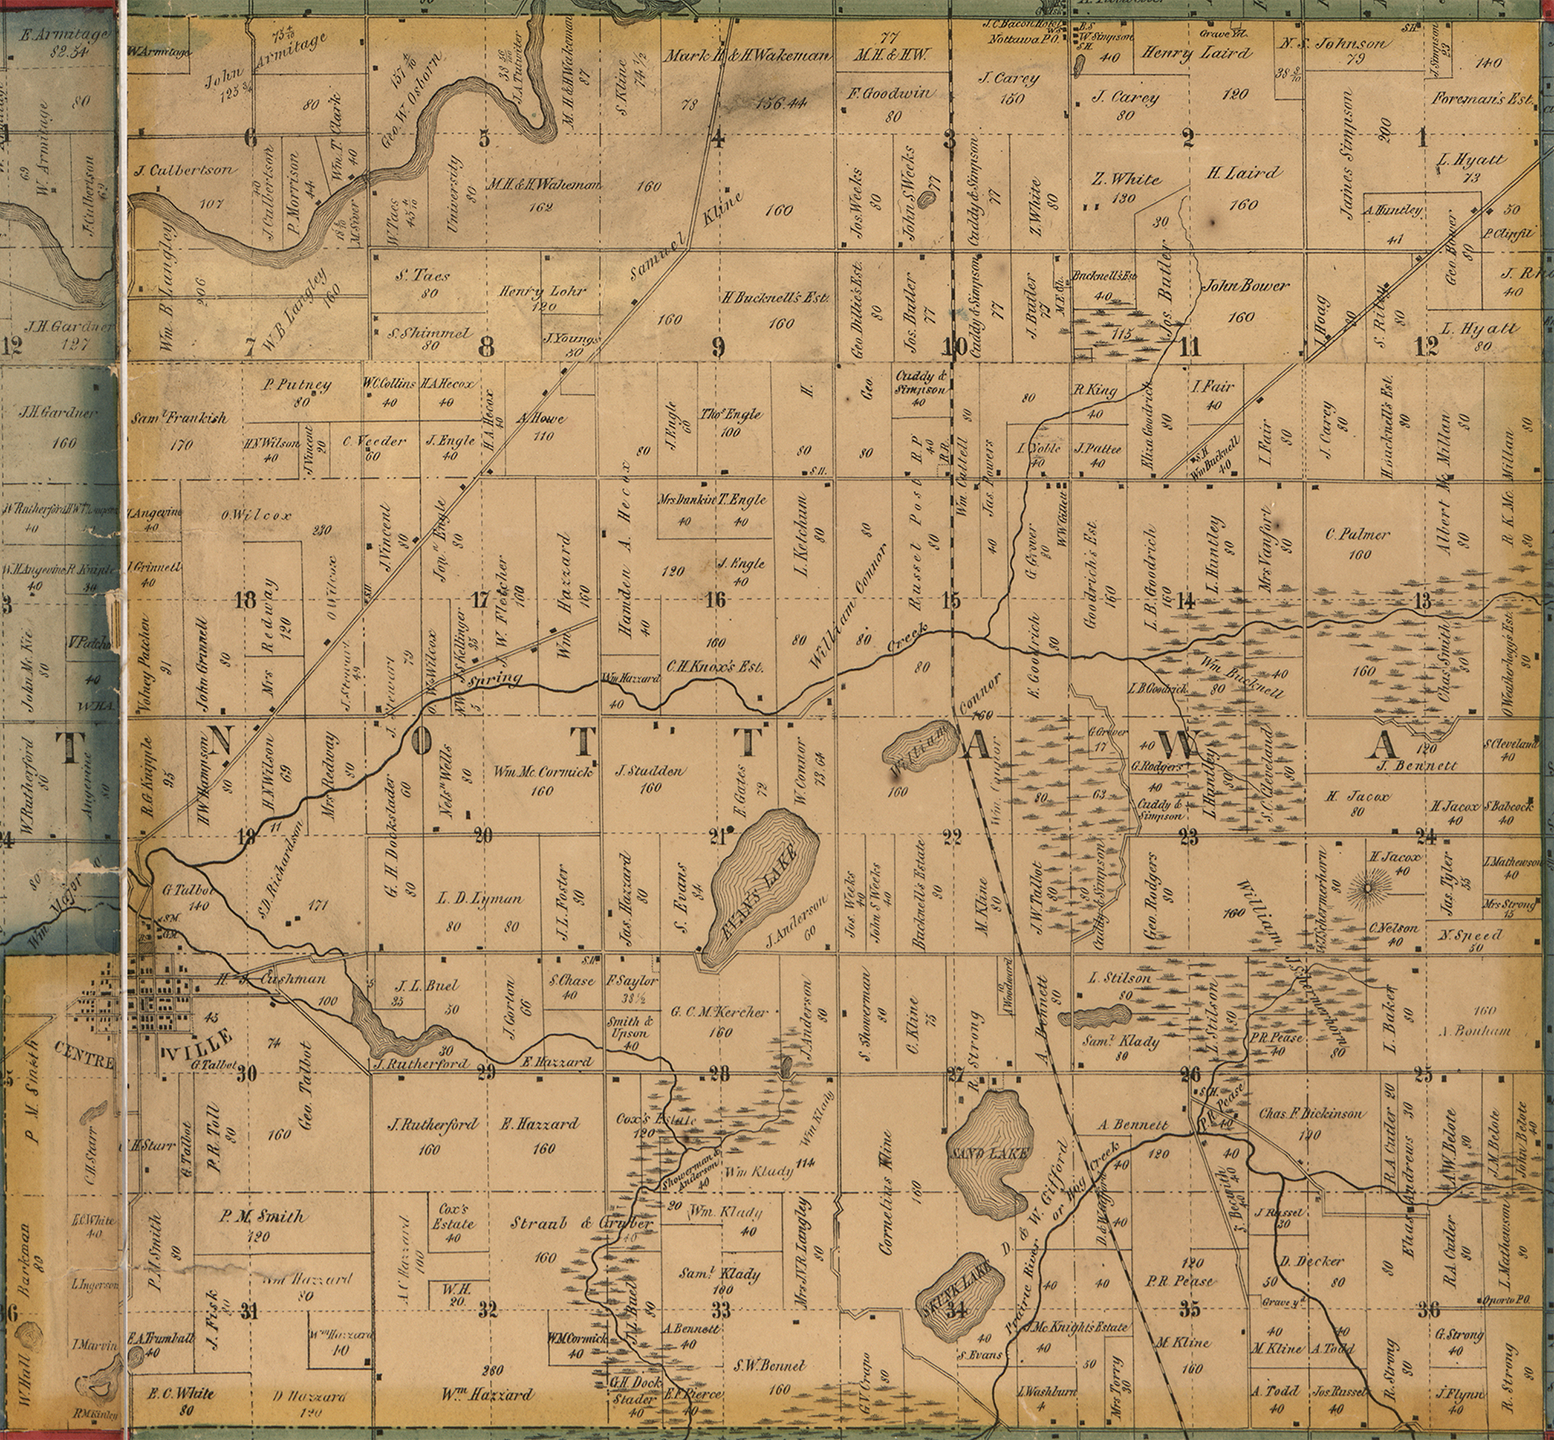 1858 Nottawa Township Michigan landownership map